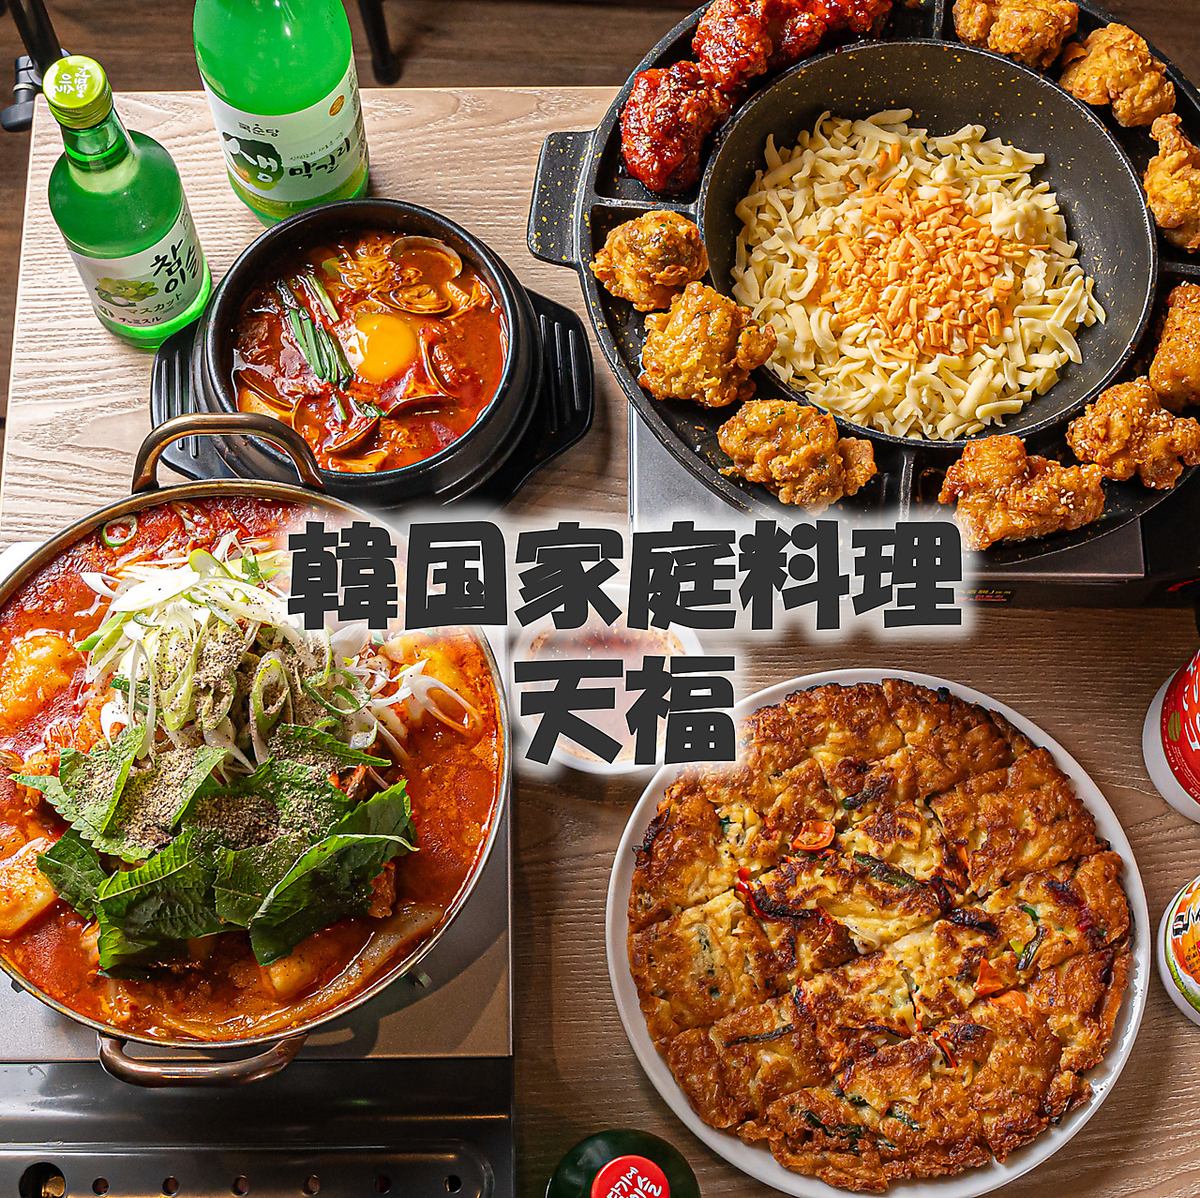 請用美味的韓國美食和美酒度過幸福的時光。